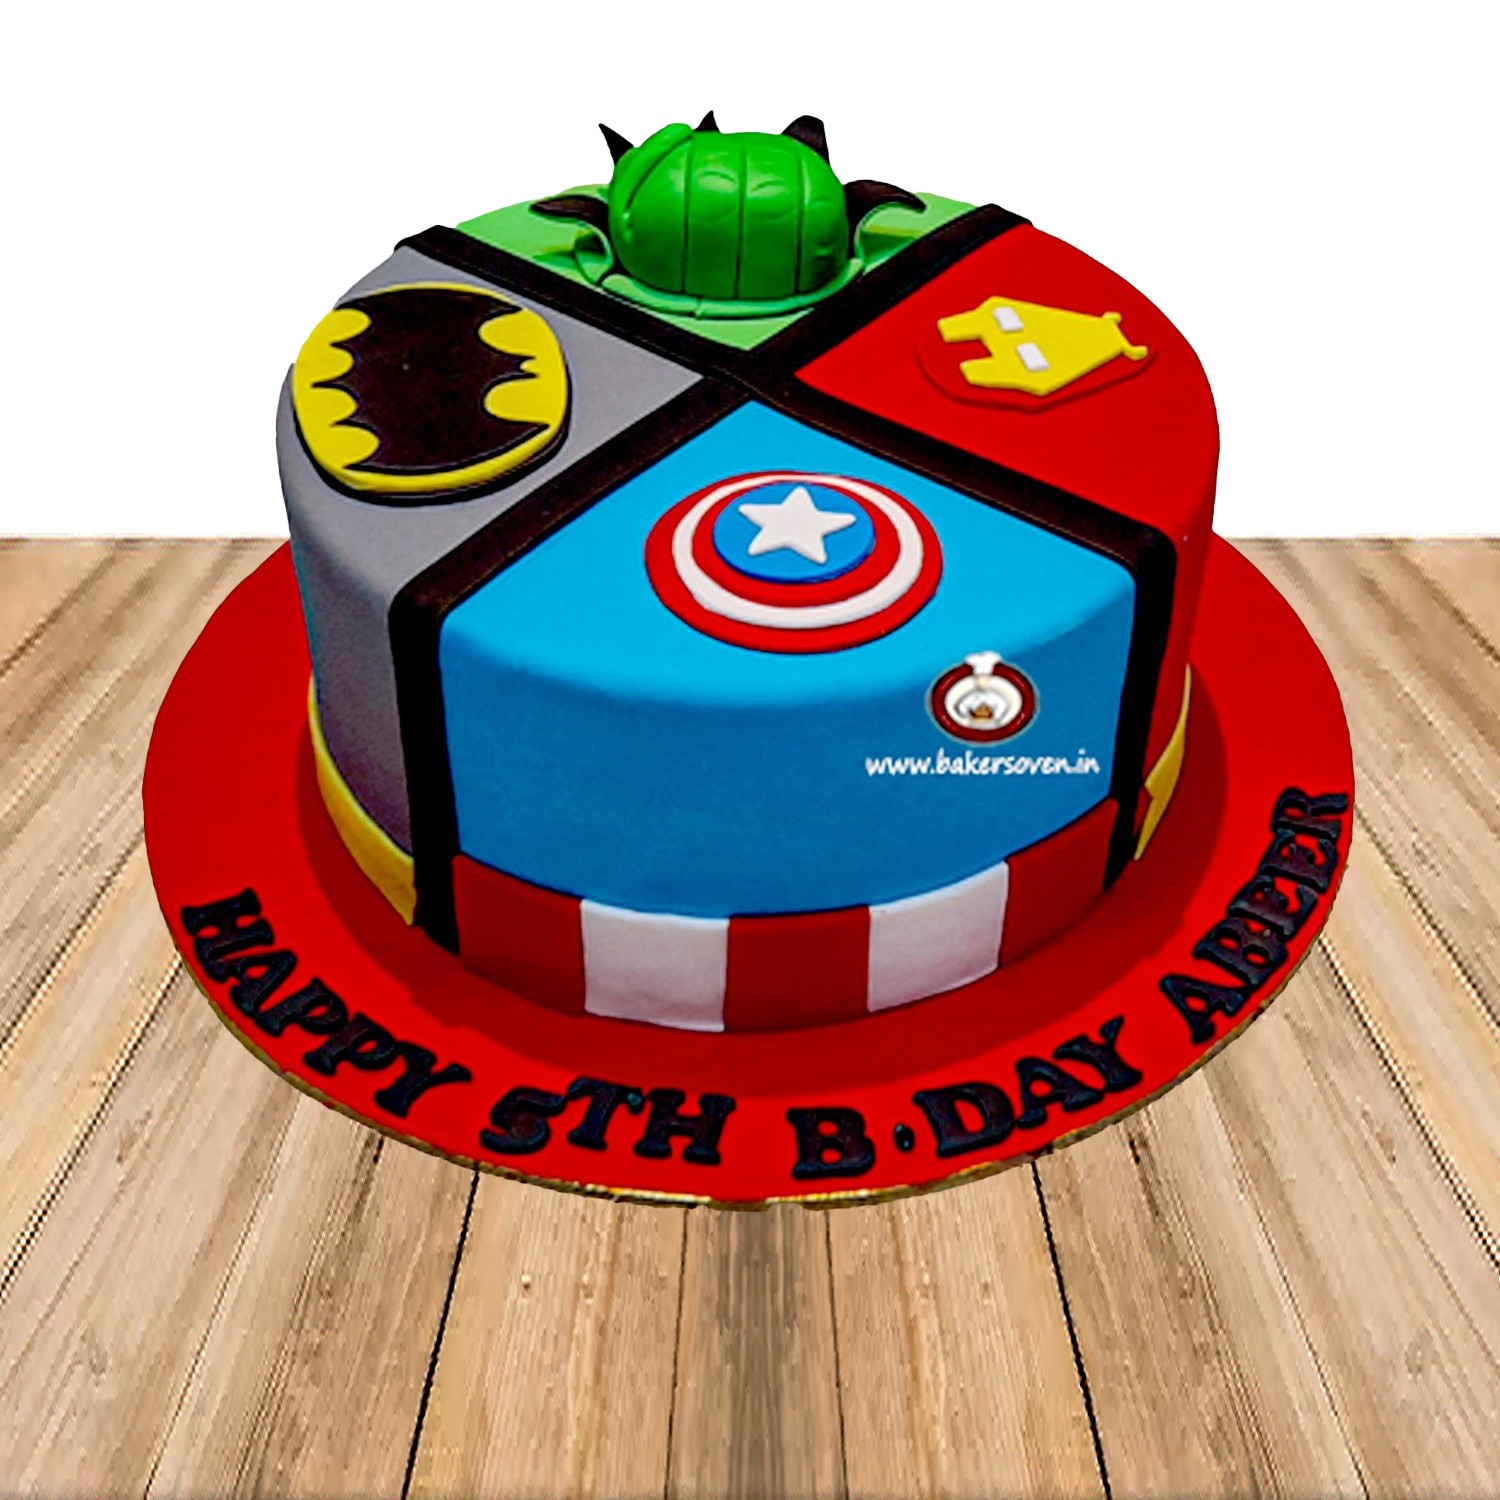 16 Marvel Wedding Cakes for Superhero Couples  hitchedcouk   hitchedcouk